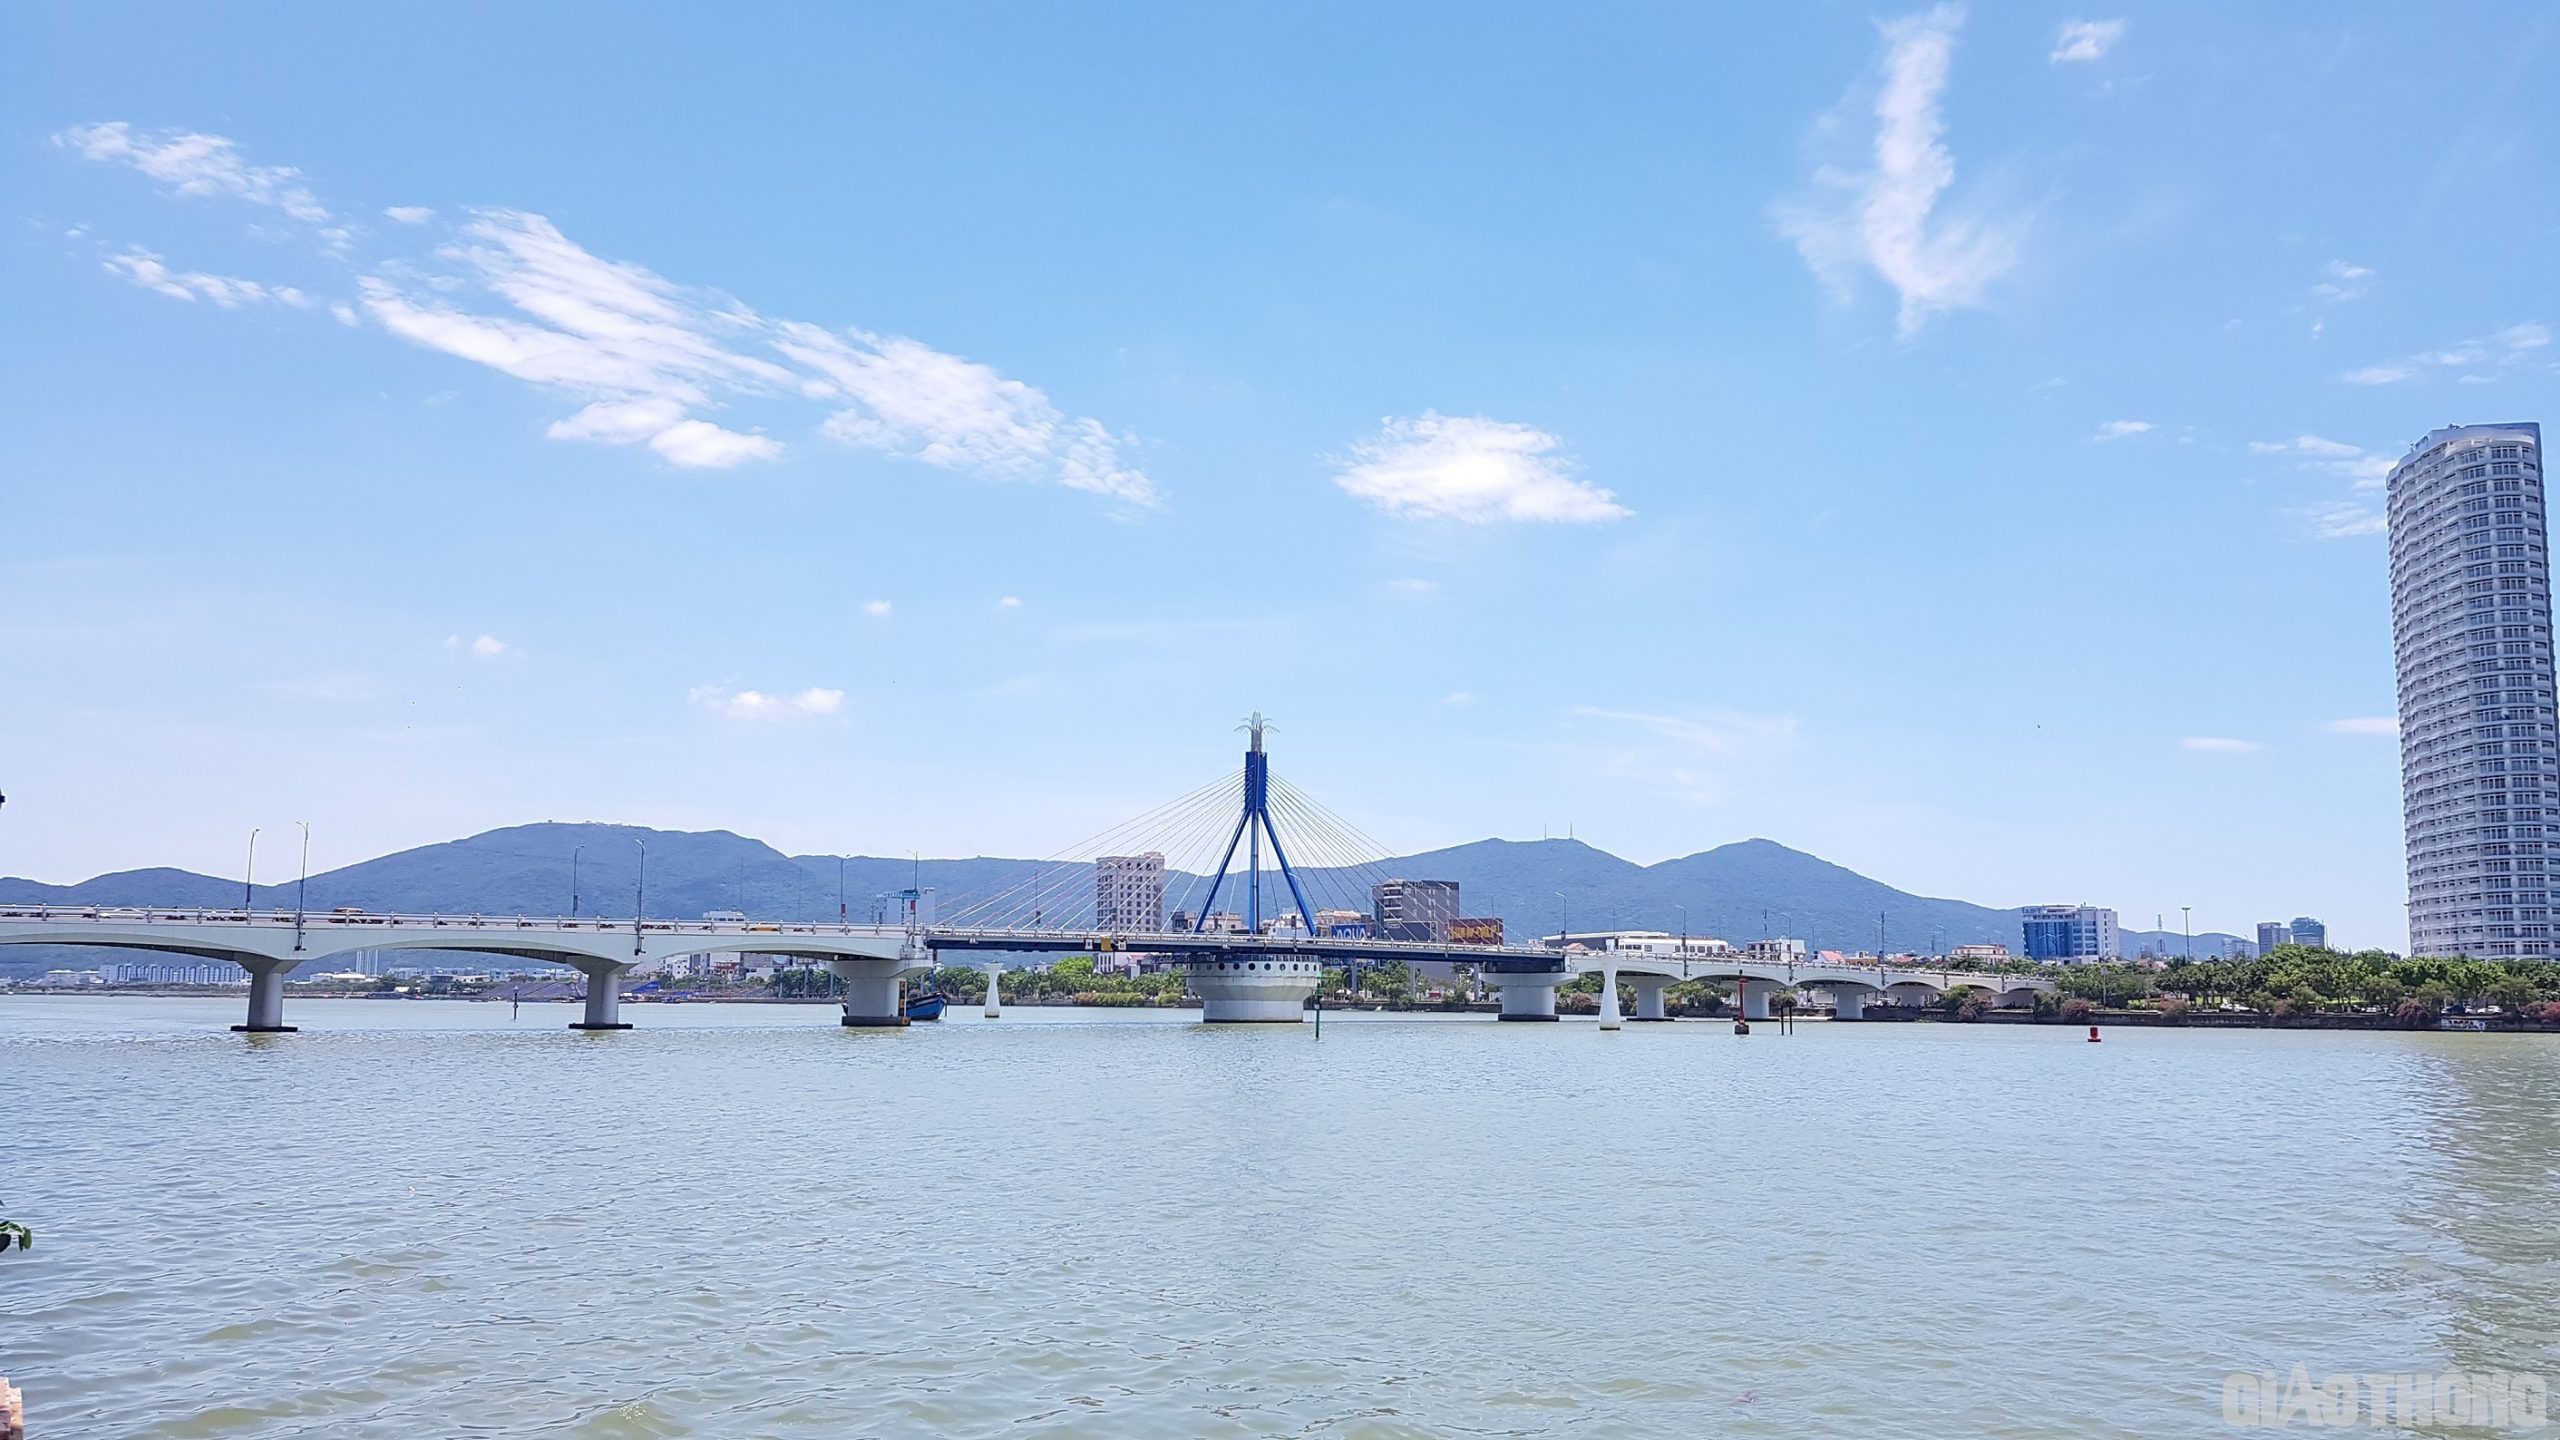 Kiến trúc độc đáo Cầu Sông Hàn mang nét kiến trúc độc đáo nhìn từ nhiều góc độ